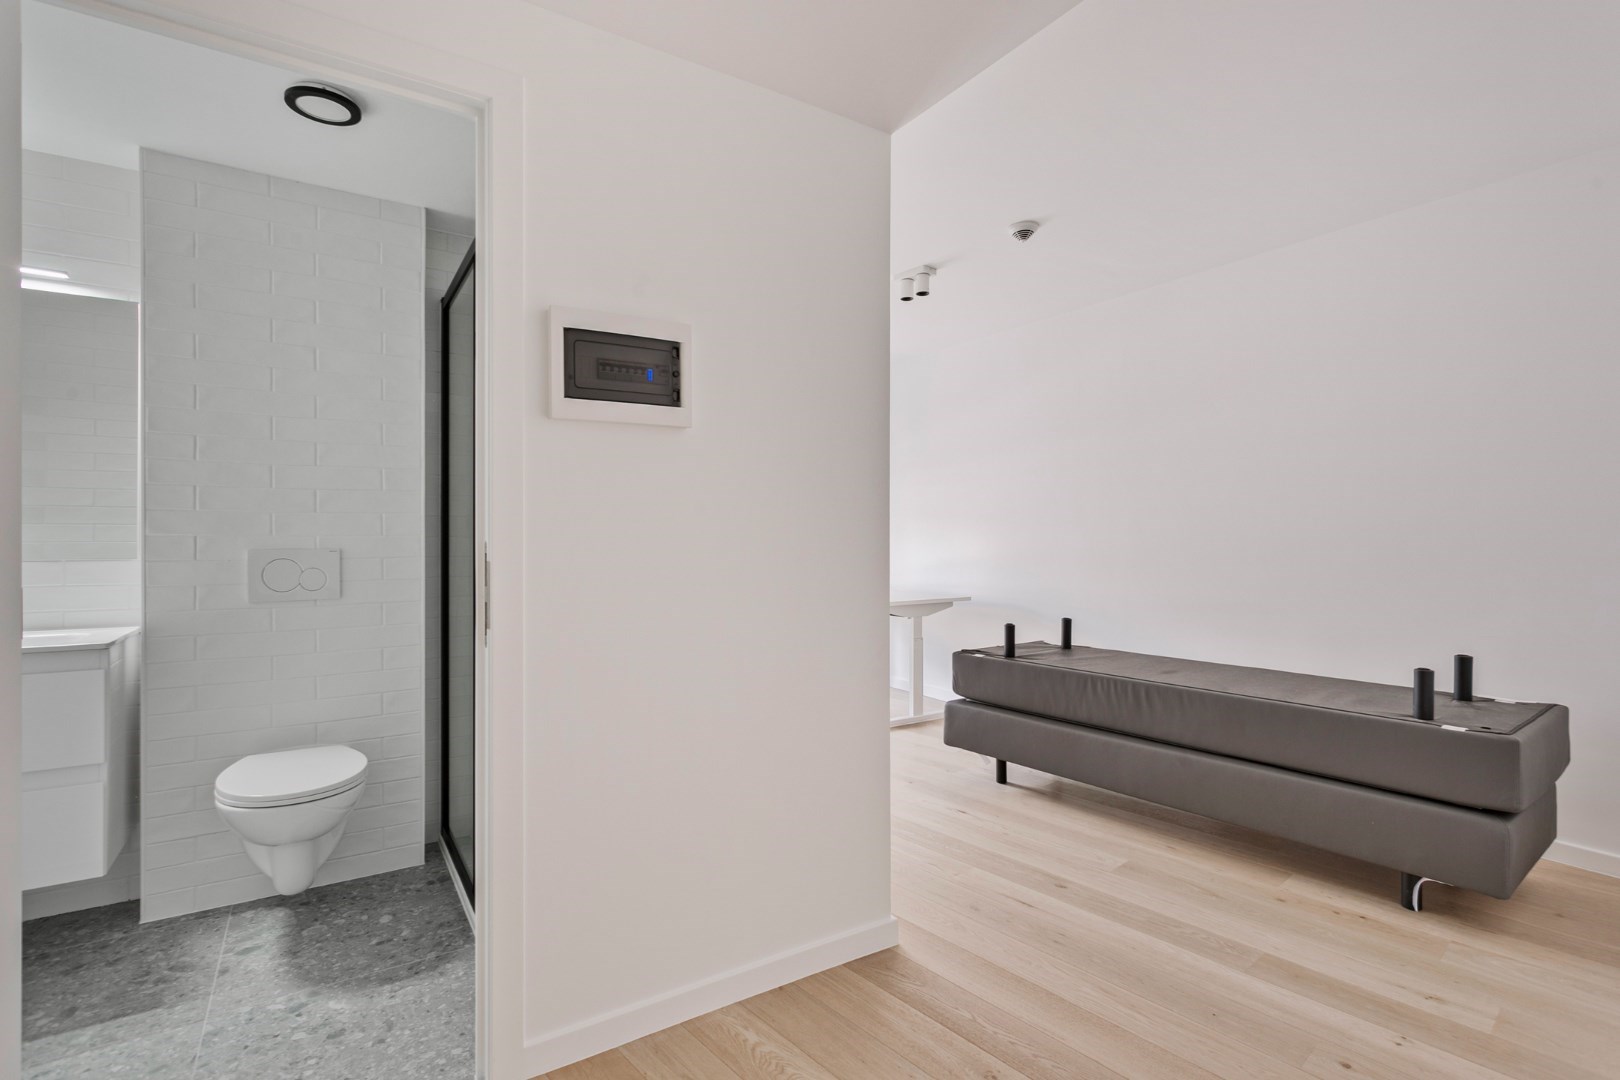 Volledig gerenoveerde en gemeubelde kamer met priv&#233;-sanitair in een kleinschalige residentie! Laatste 4 units! 